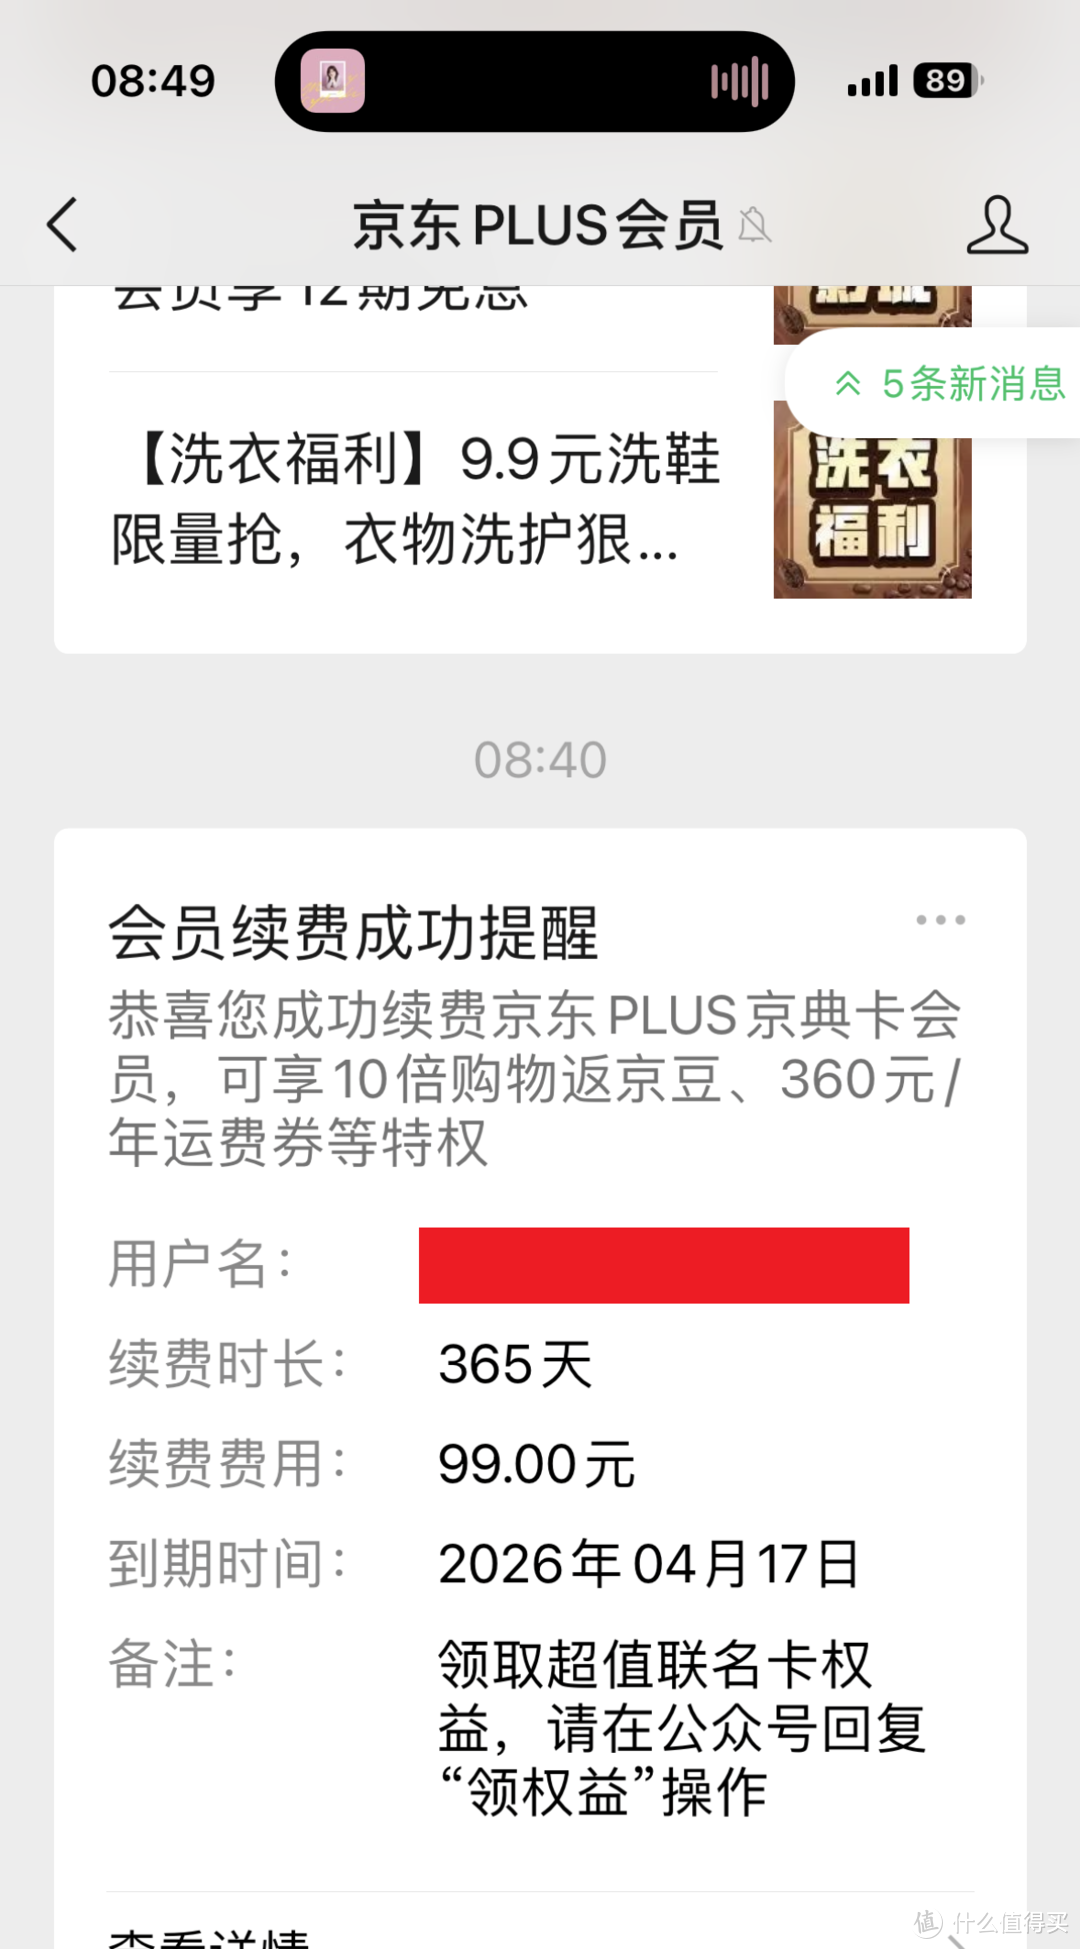 京东Plus+QQ音乐豪华绿钻联合福利，限时4.4折开通会员年卡攻略，每天仅需0.4元！